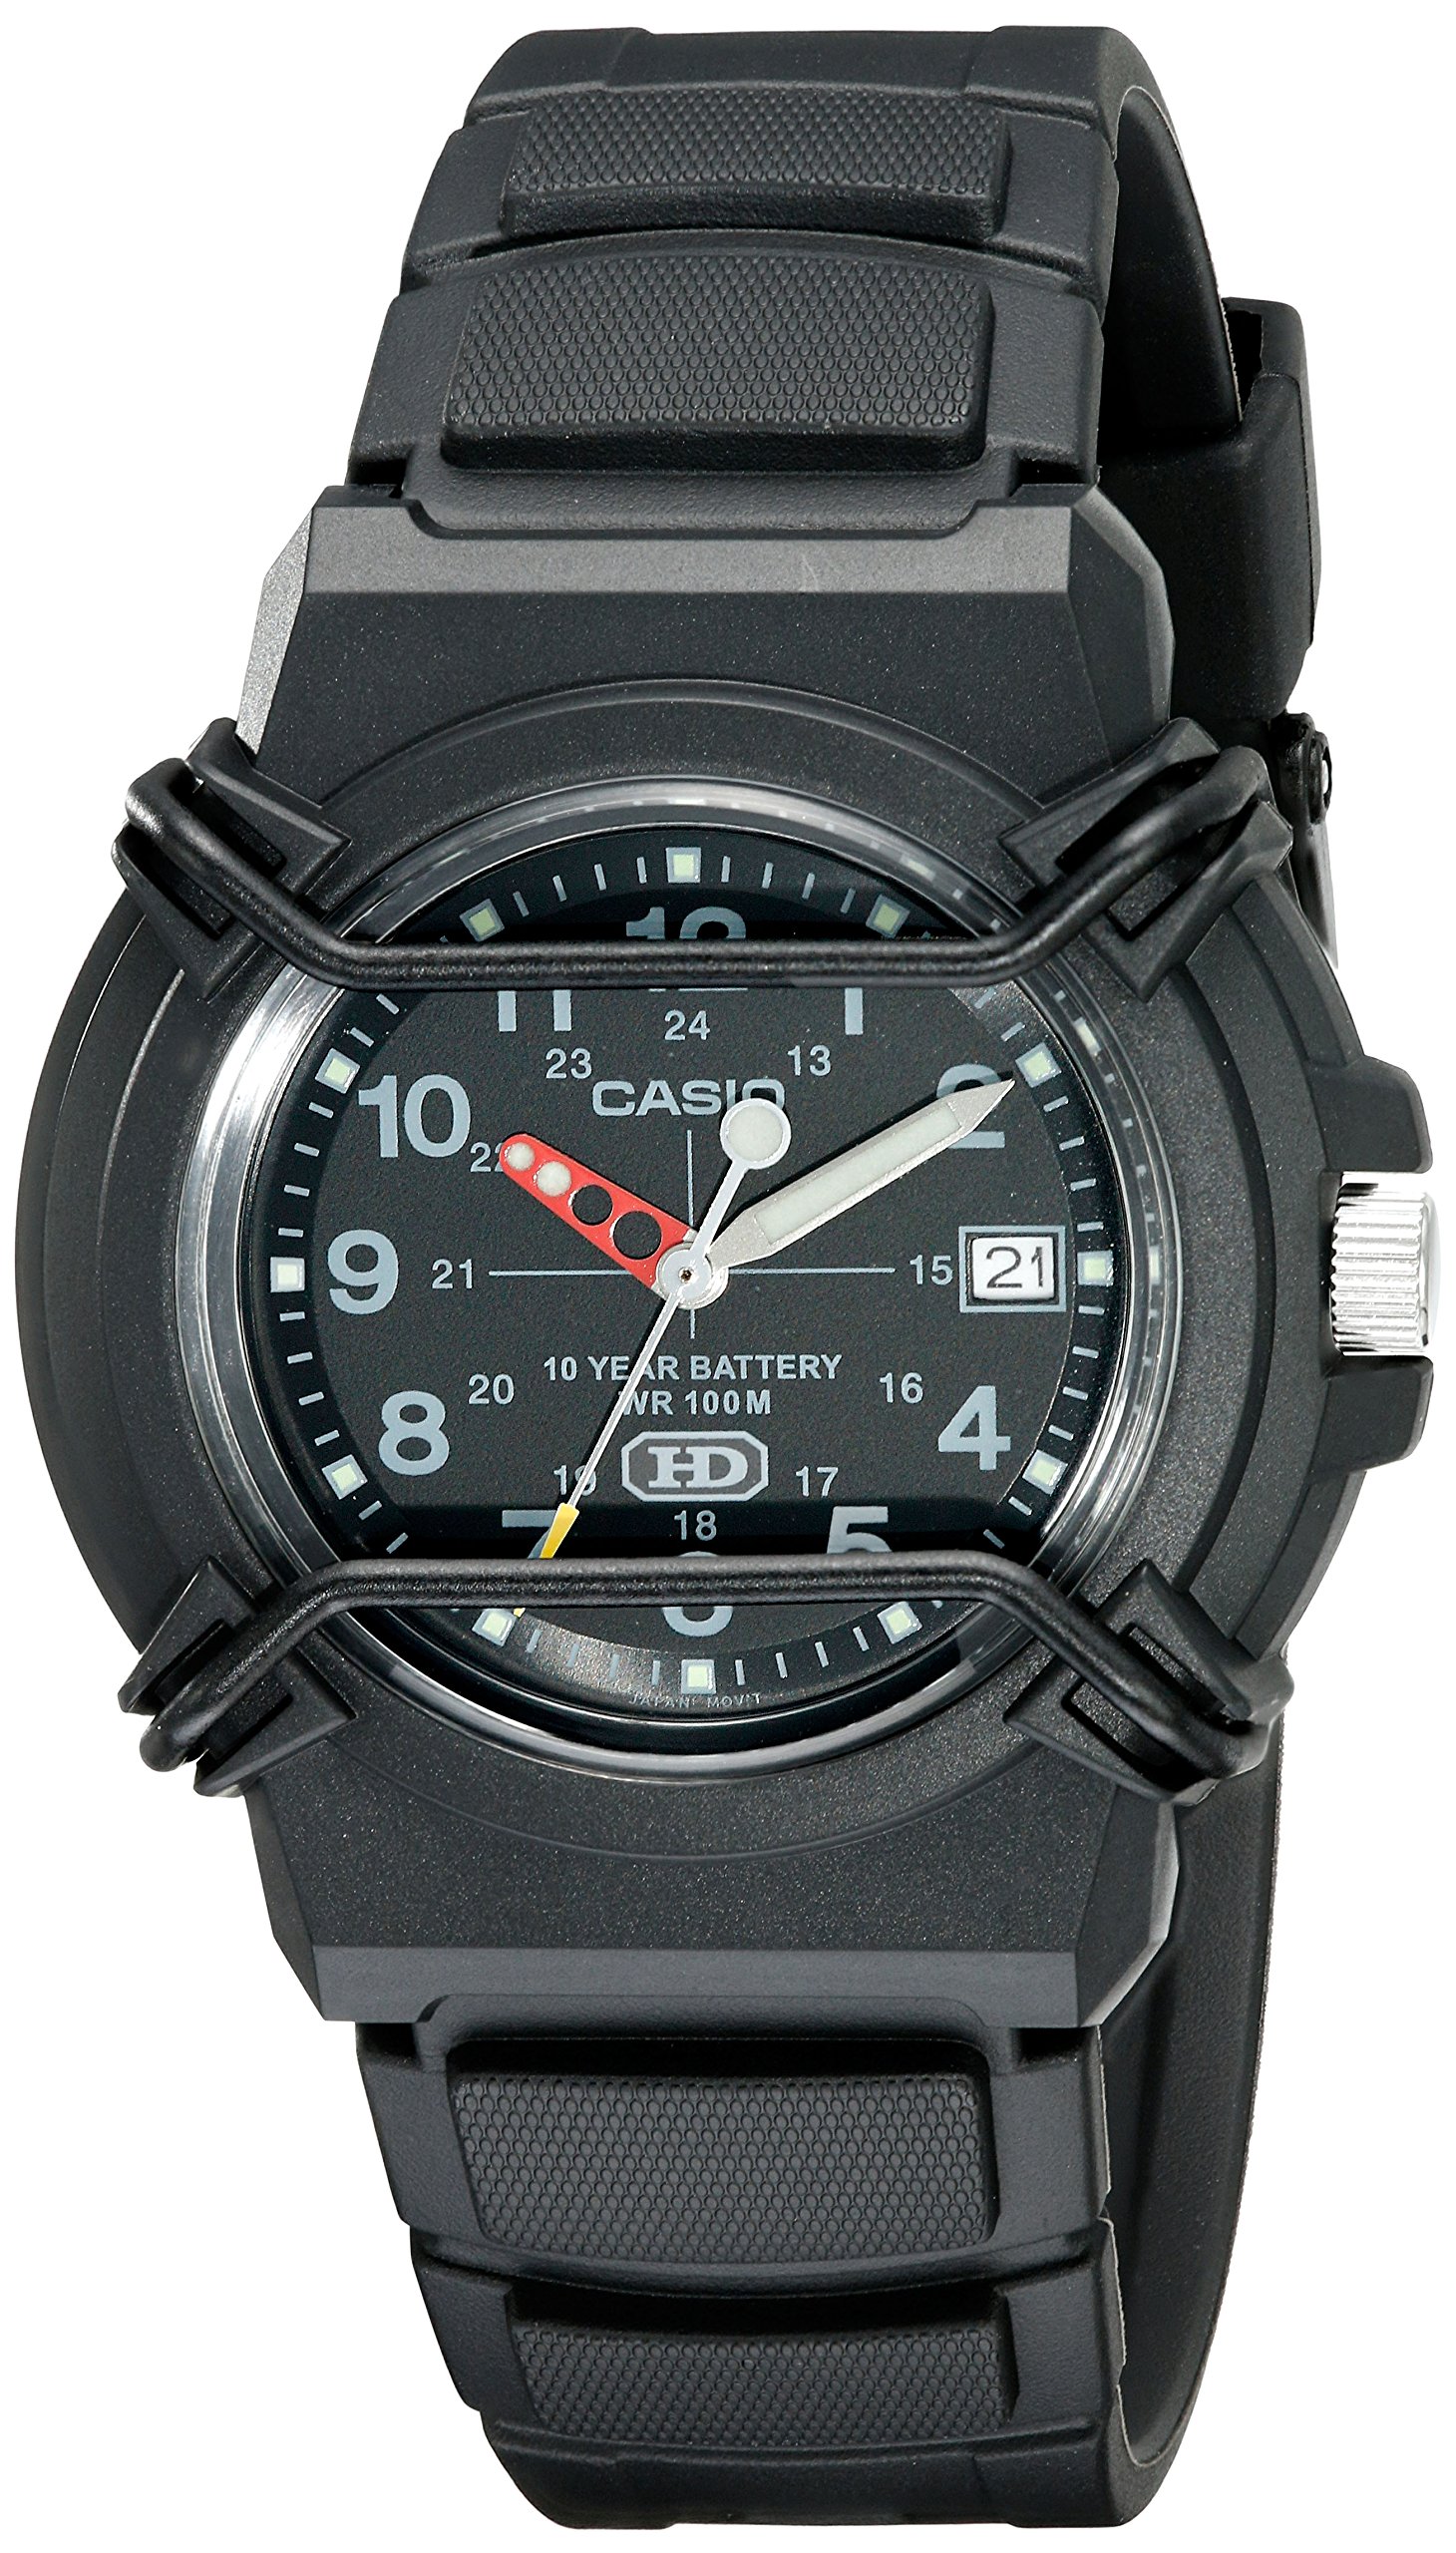 $14.02: Casio Men's Analog Sport Watch (Black)